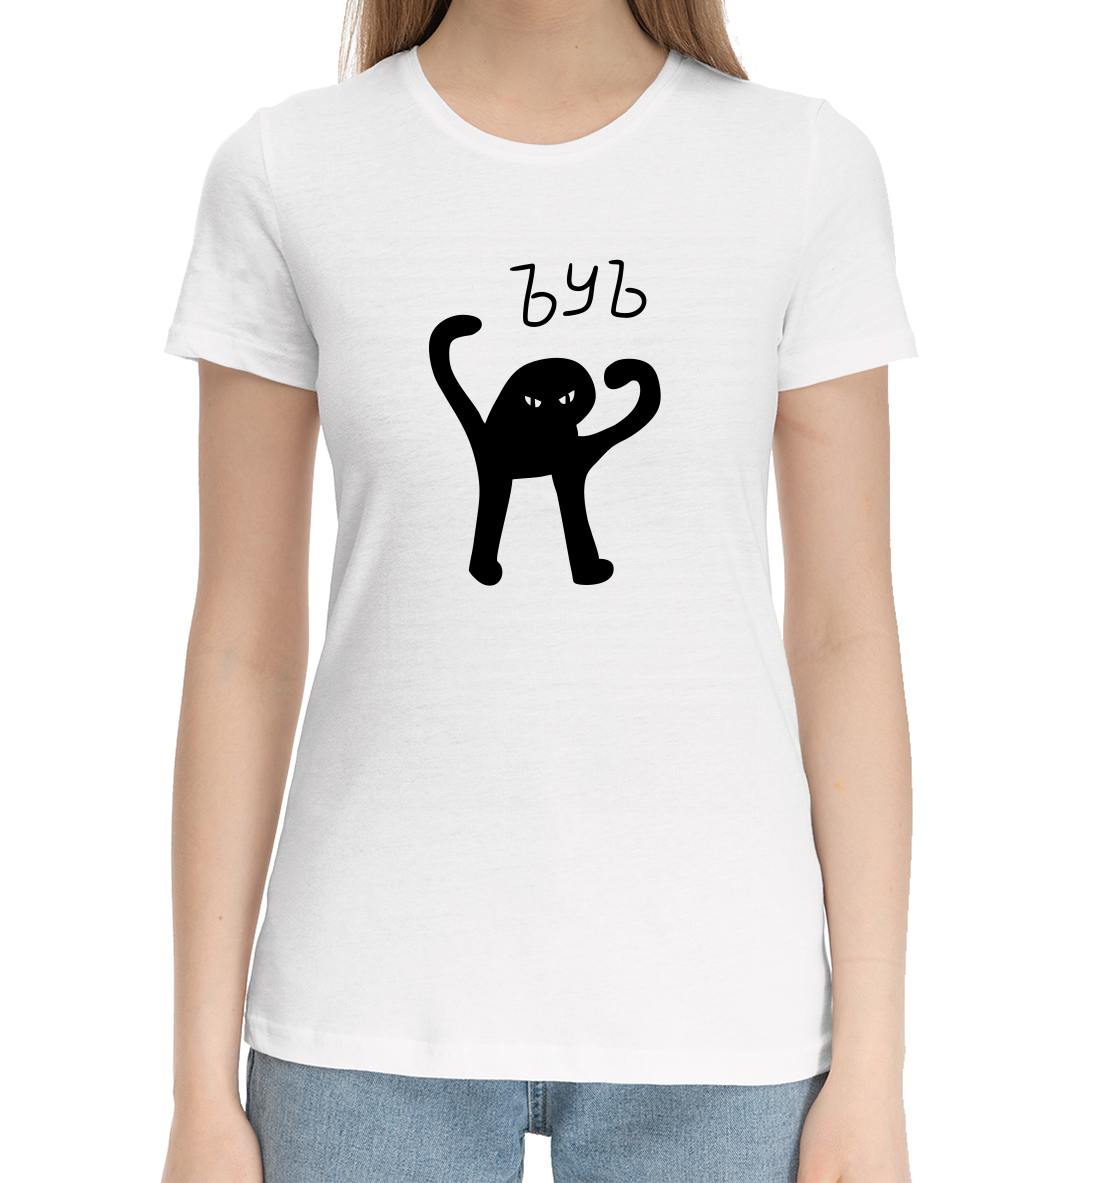 Женская Хлопковая футболка с надписью ЪУЪ, артикул MEM-793871-hfu-1mp